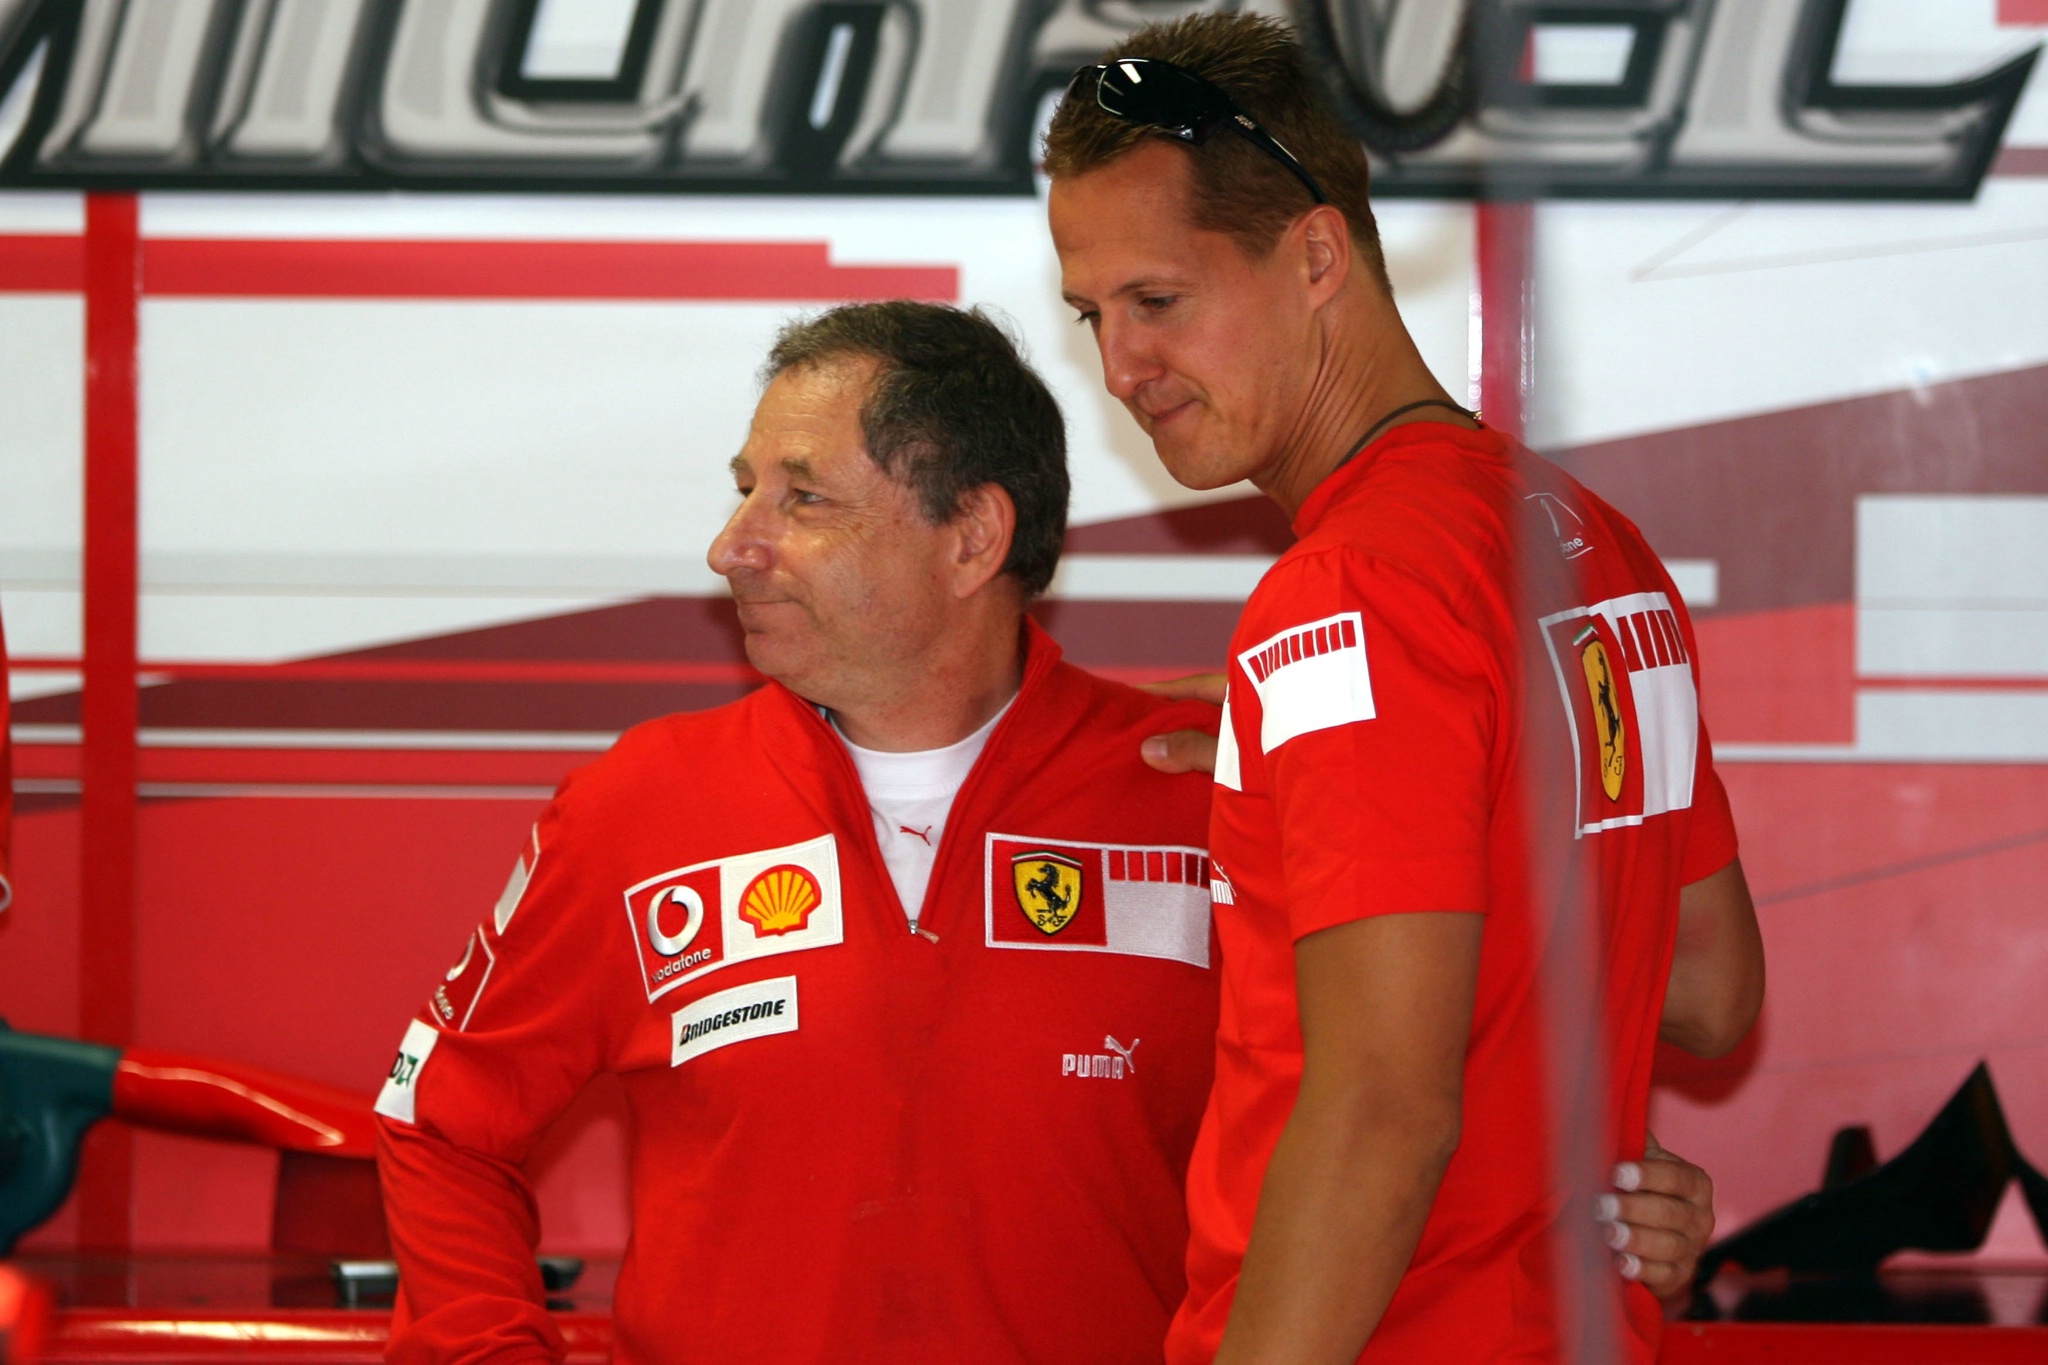  Monza, Italia, Jean Todt (FRA), Scuderia Ferrari, Ketua Tim, Manajer Umum, Ketua Tim, dan Michael Schumacher (GER),